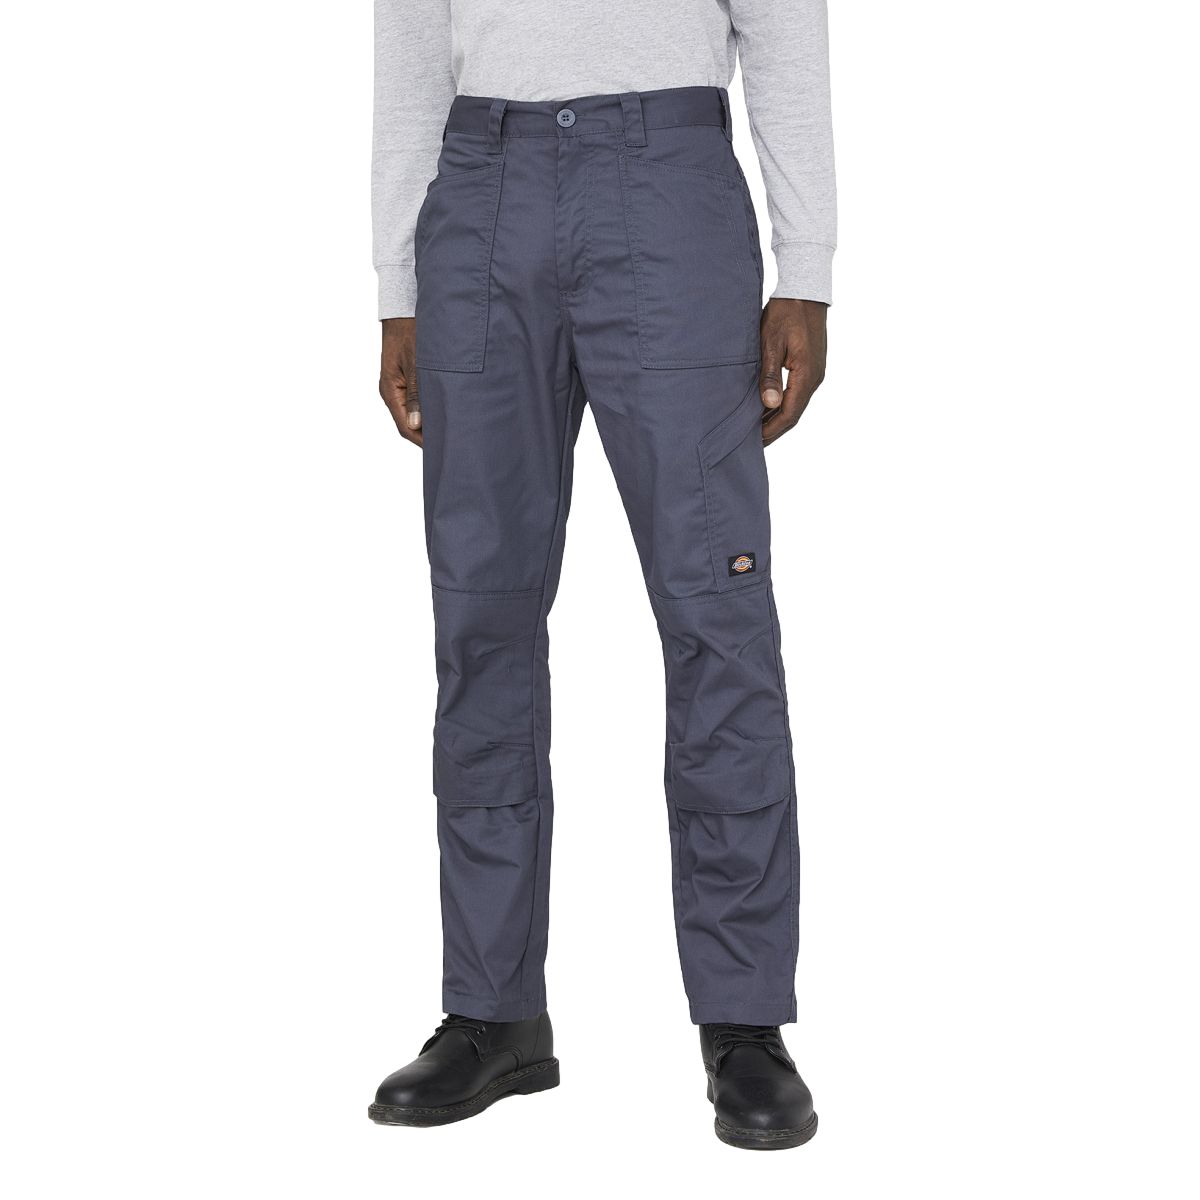 Pantalon de travail Action Flex gris - Dickies - Taille 48 0